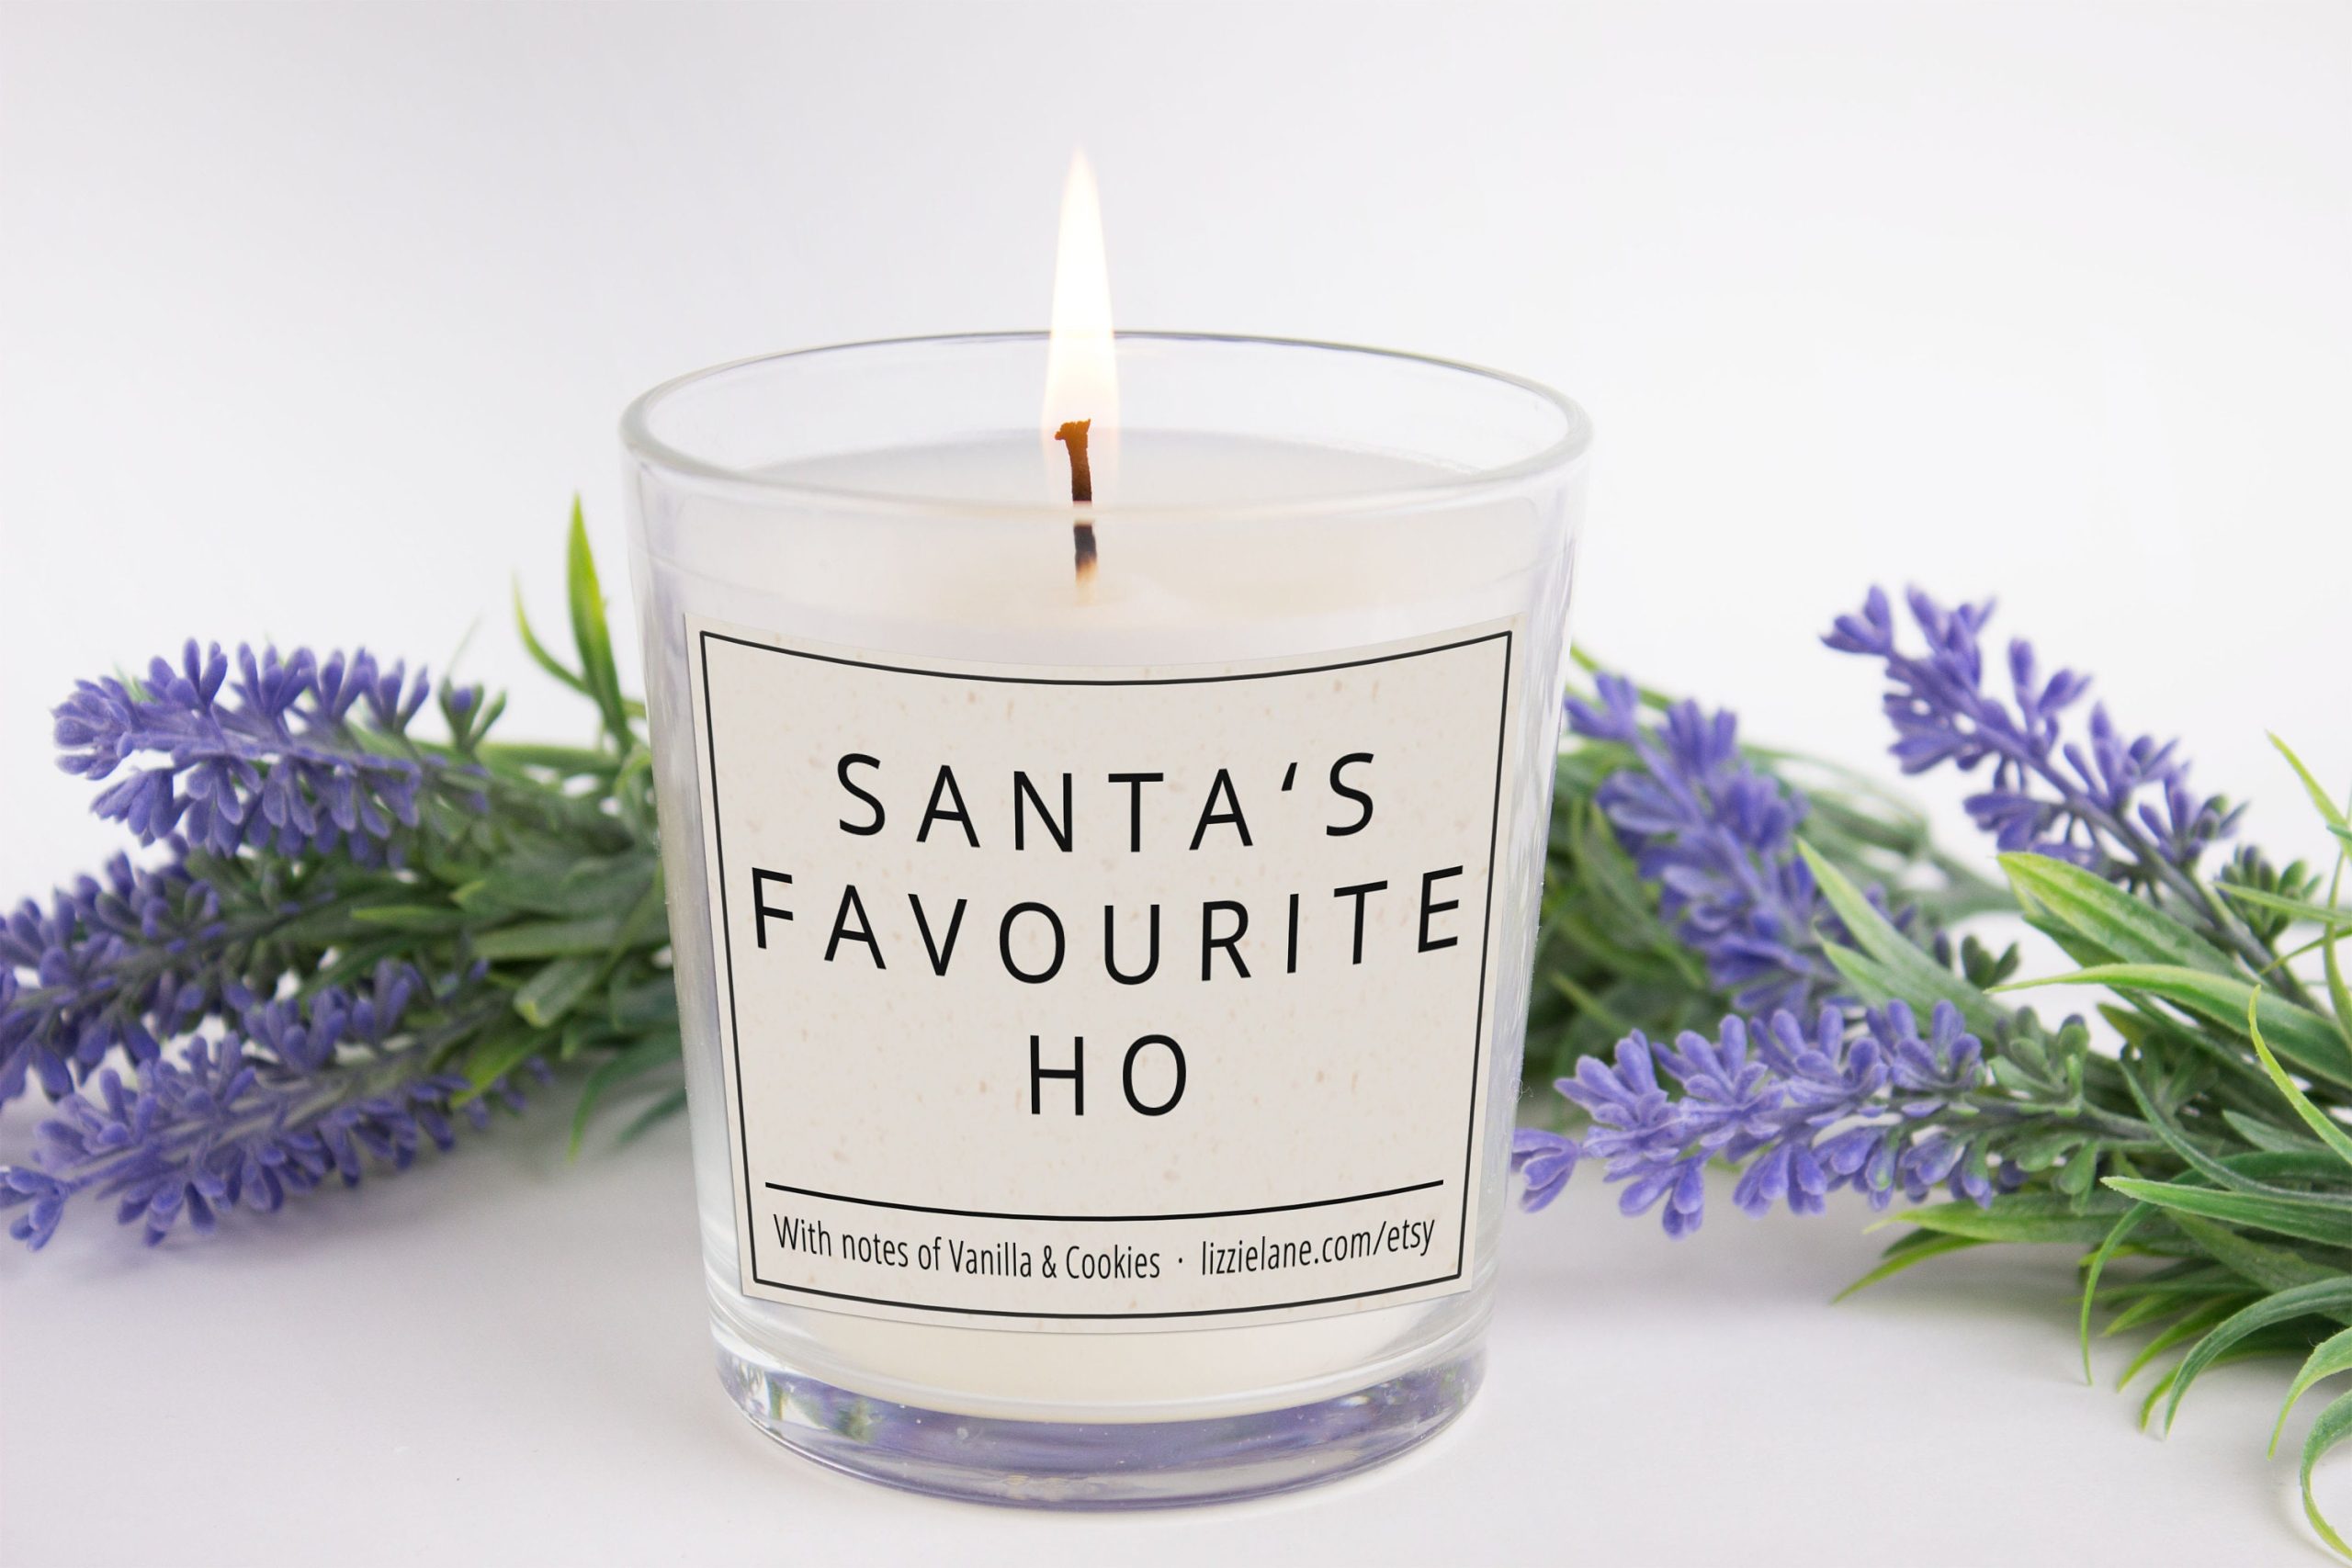 Secret Santa Gift Smells Like Funny Candle